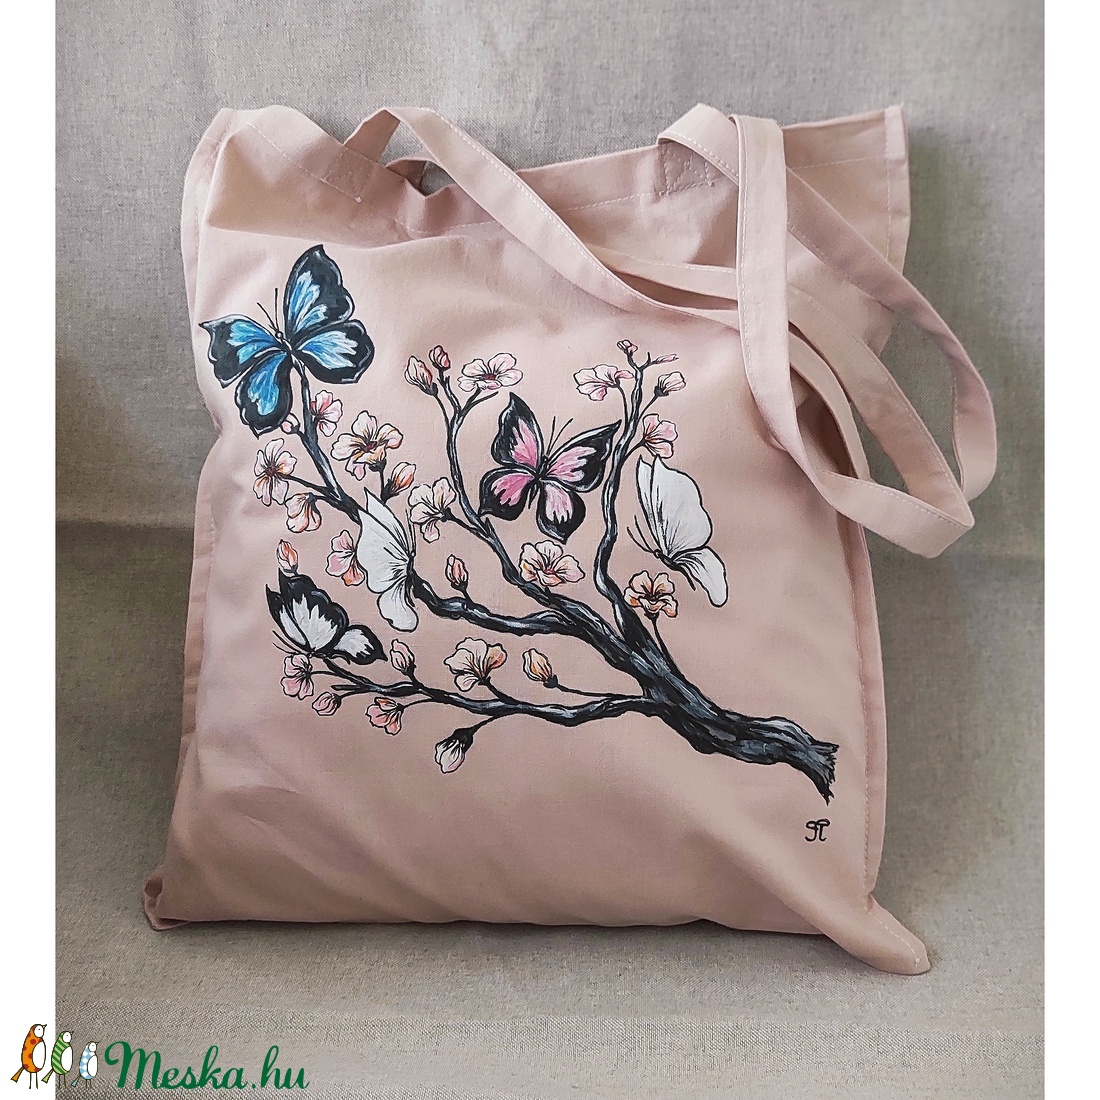 Bevásárló táska kézzel festett  cseresznye virágos-pillangós  mintával - táska & tok - bevásárlás & shopper táska - shopper, textiltáska, szatyor - Meska.hu